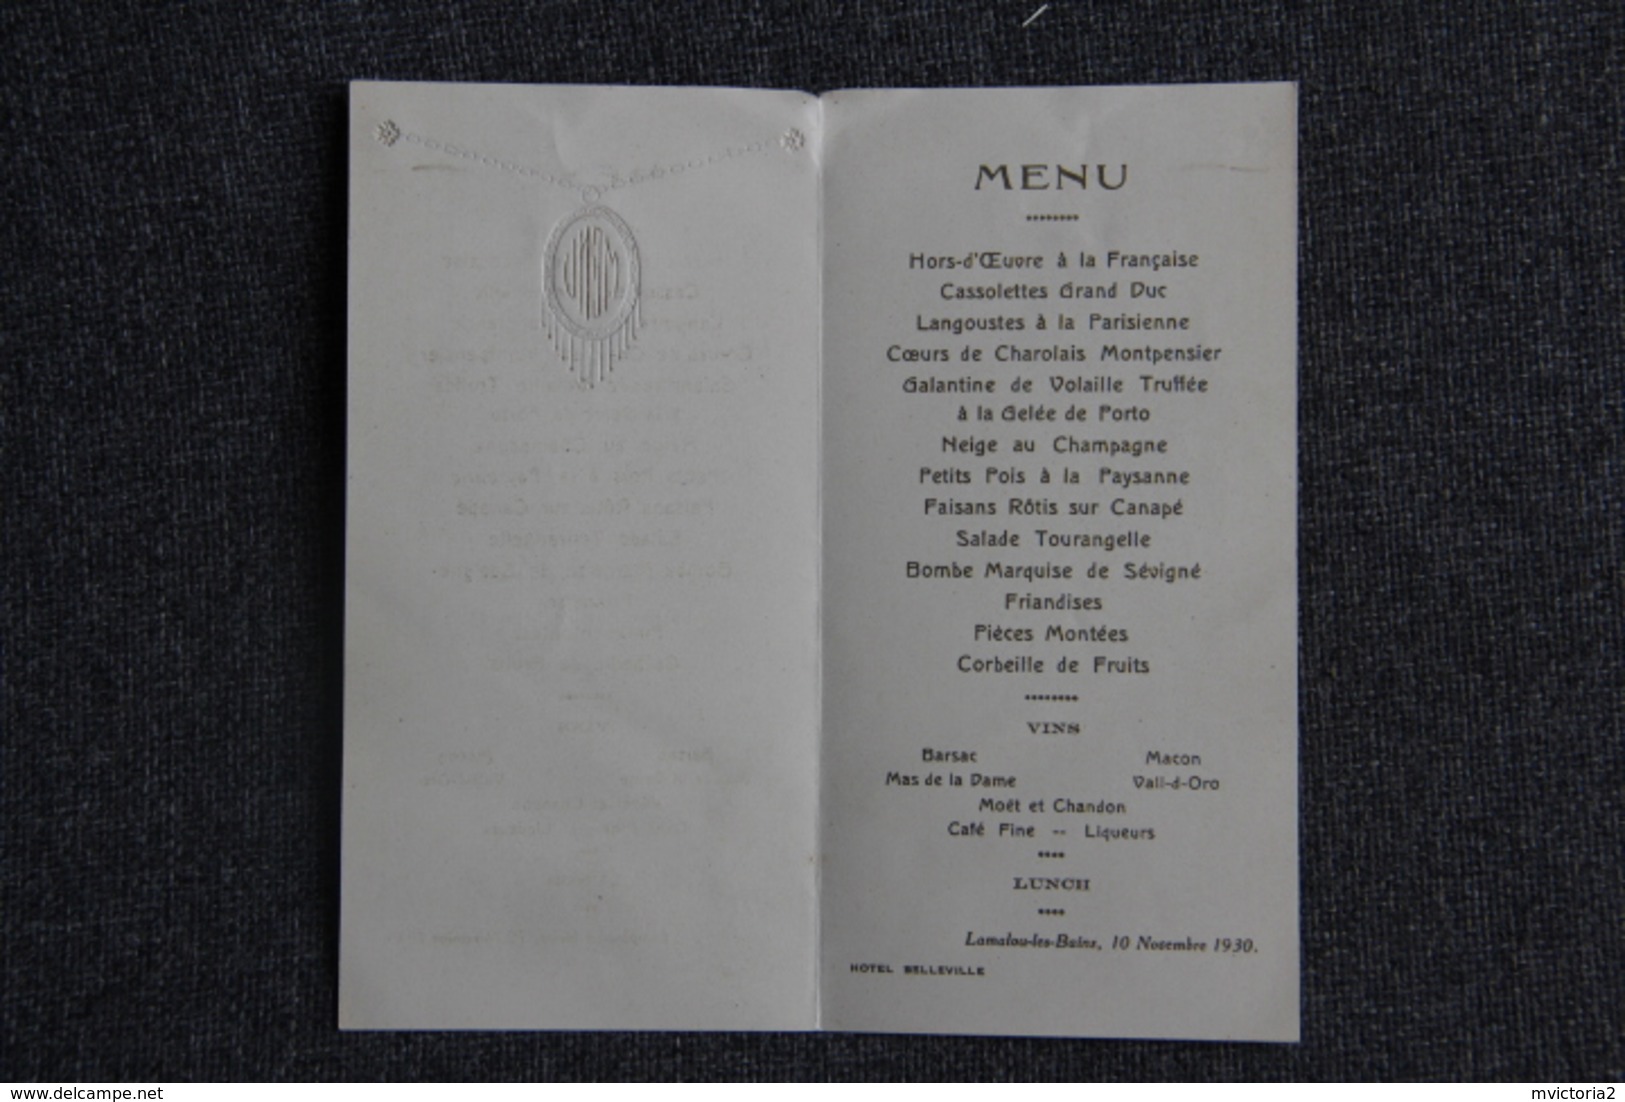 LAMALOU LES BAINS - Menu D'un Repas Pris à L'Hotel BELLEVILLE, Le 10 Novembre 1930 - Menus